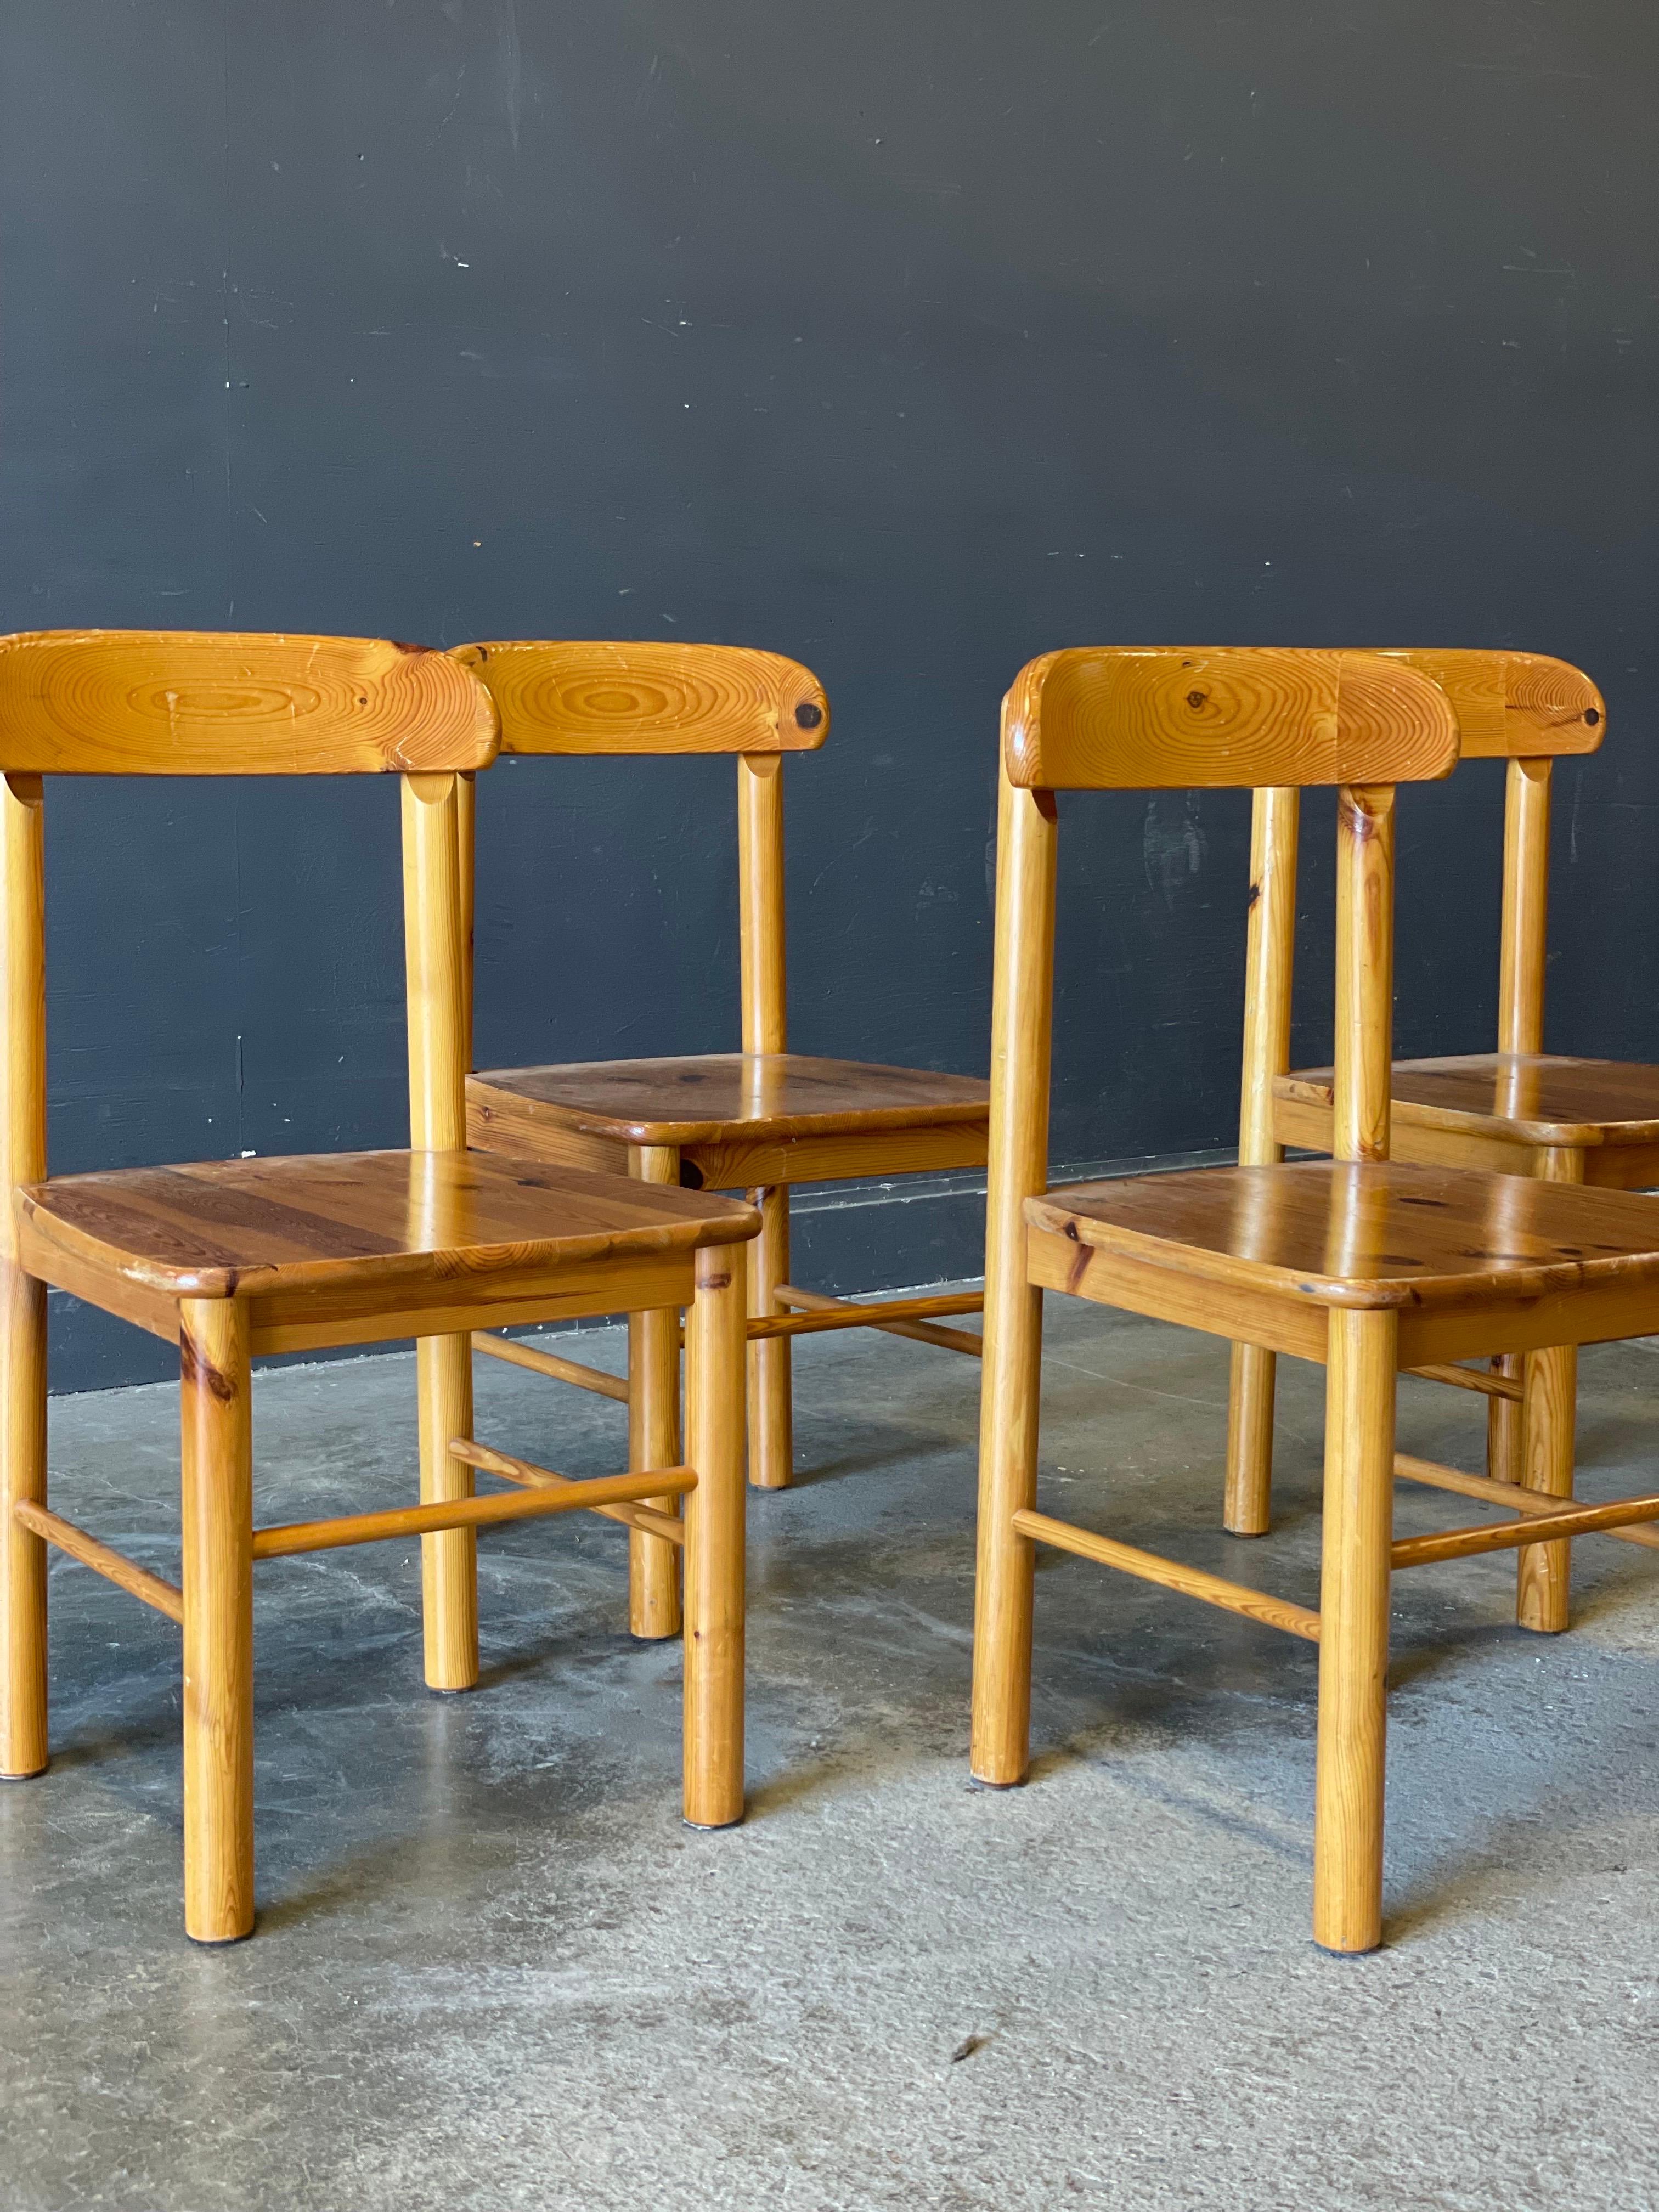 Ein prächtiges Set aus vier Kiefernholzstühlen des Designers Rainer Daumiller. Die Stühle verkörpern seine Designprinzipien: solide Konstruktion, einfache Form und reicher skulpturaler Ausdruck.